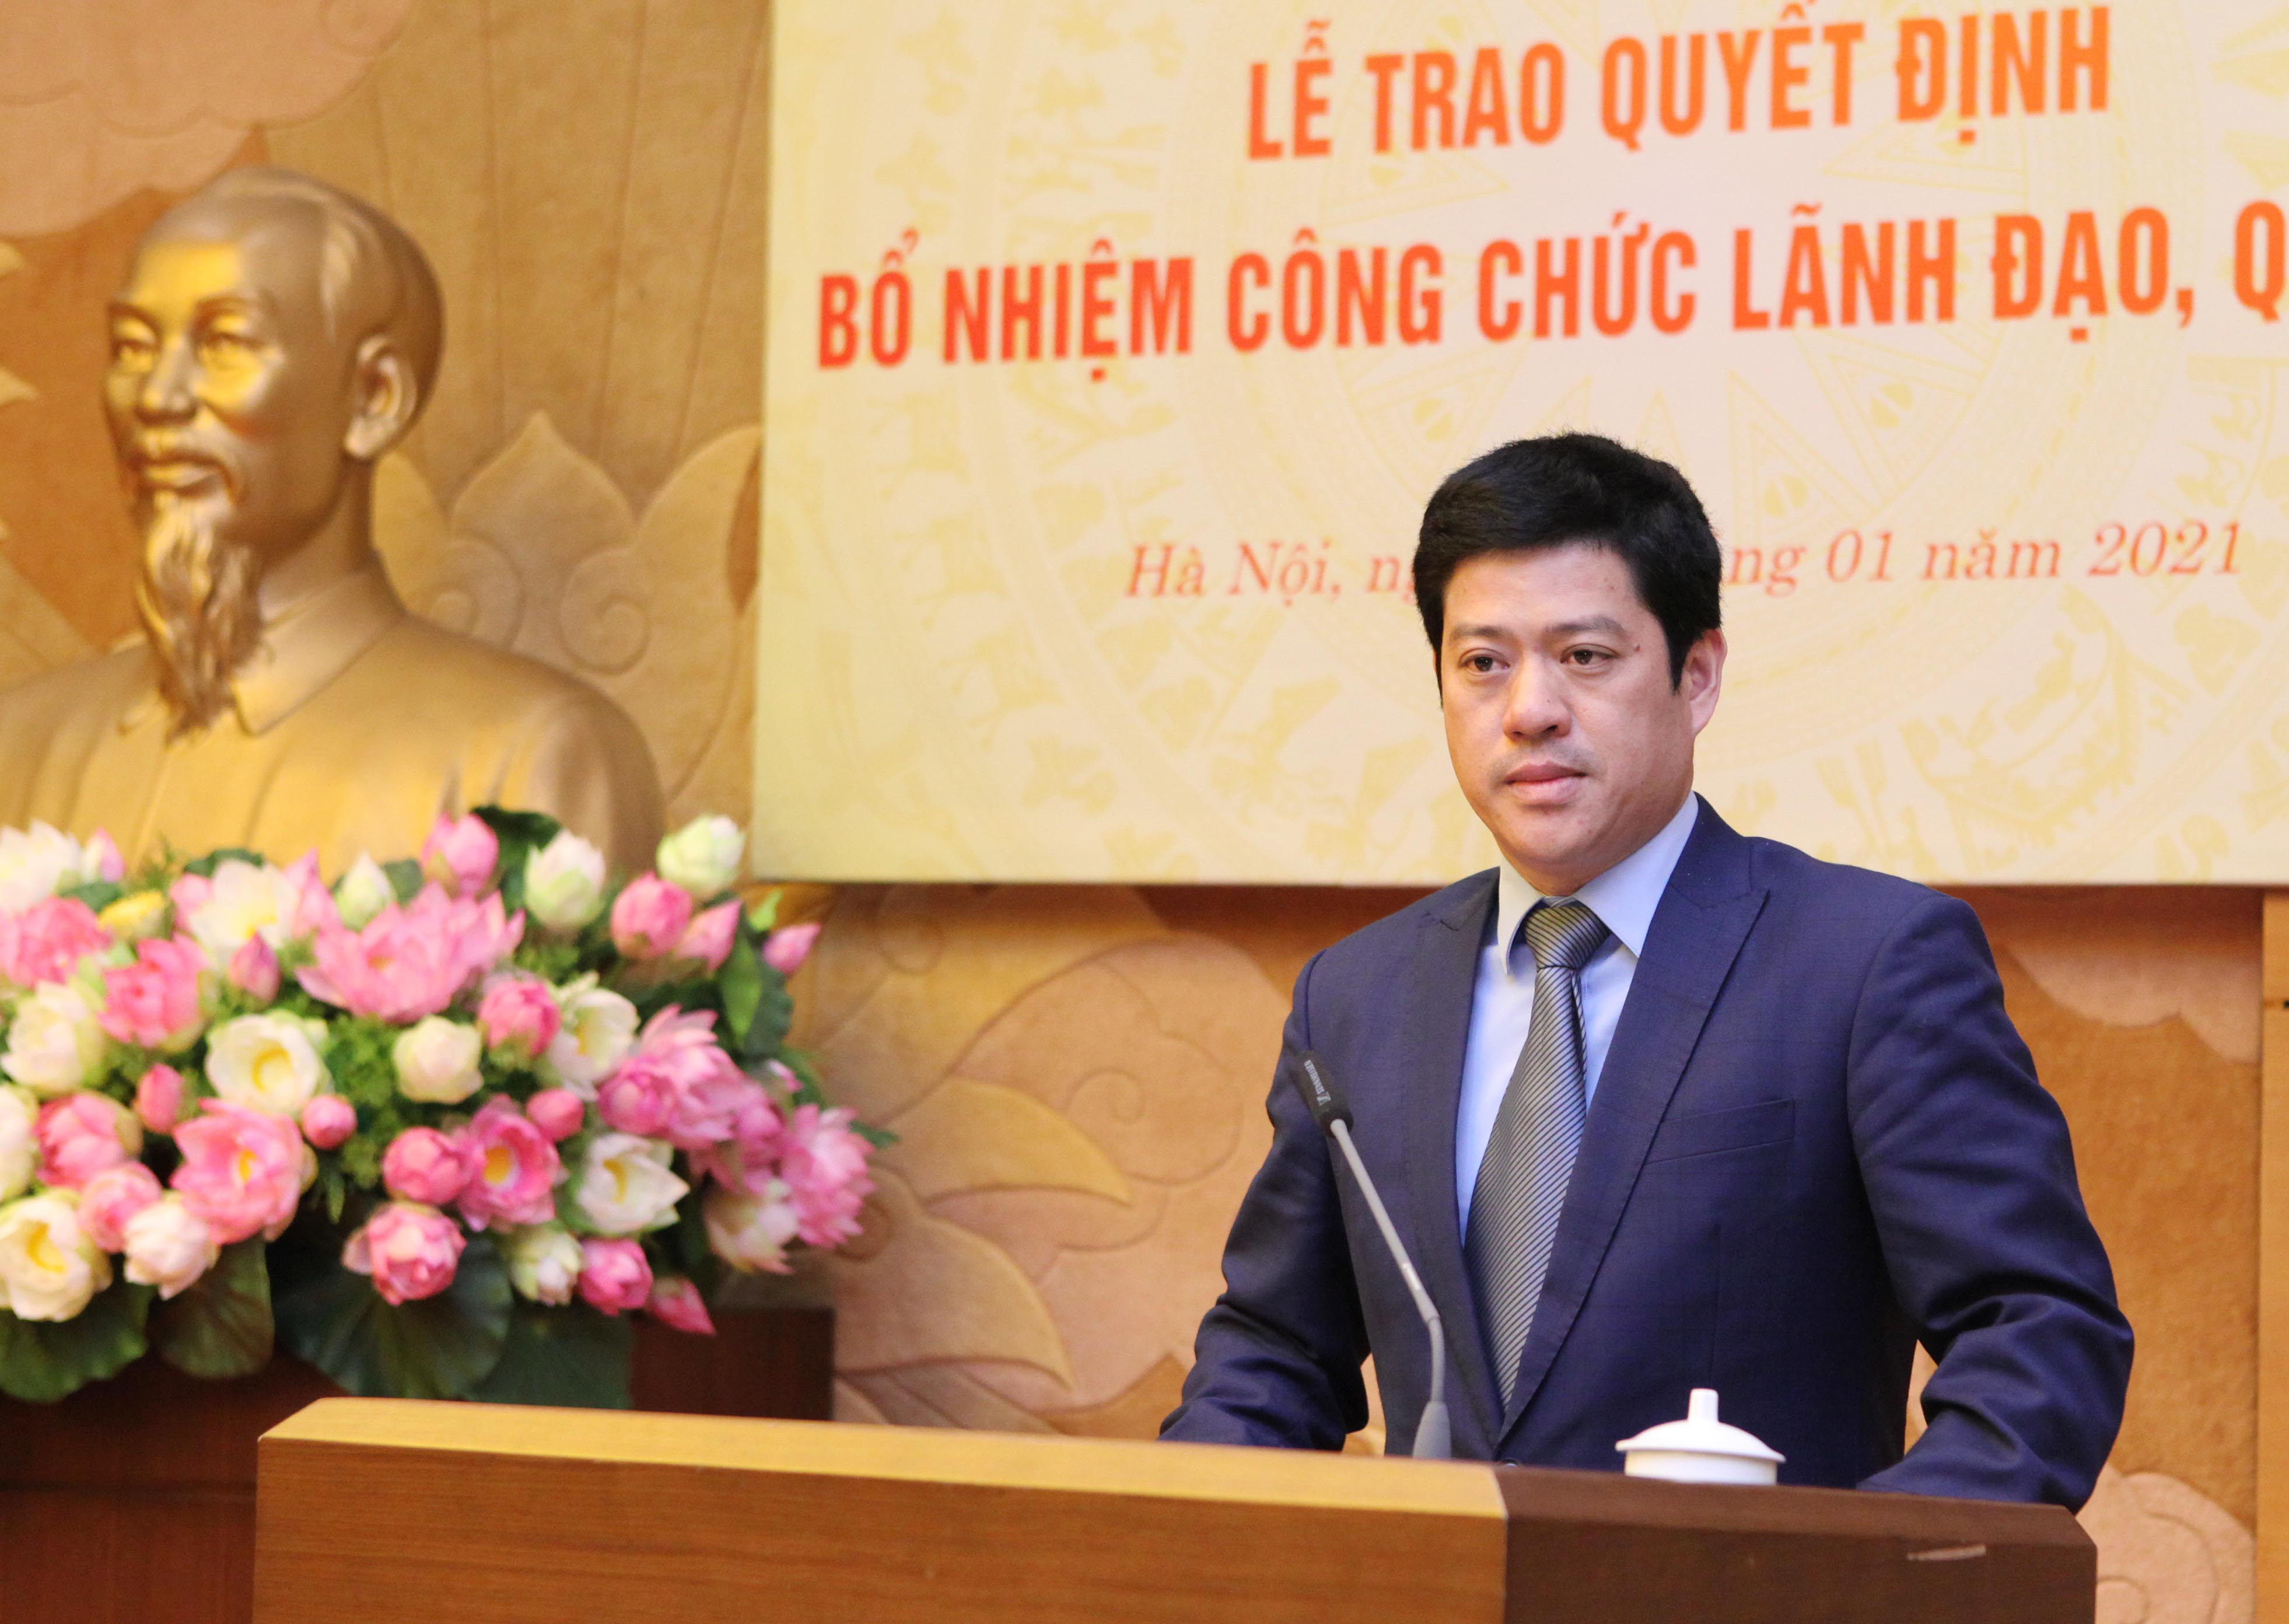 	Phó Vụ trưởng Vụ Tổng hợp Trịnh Ngọc Tuấn phát biểu tại buổi lễ